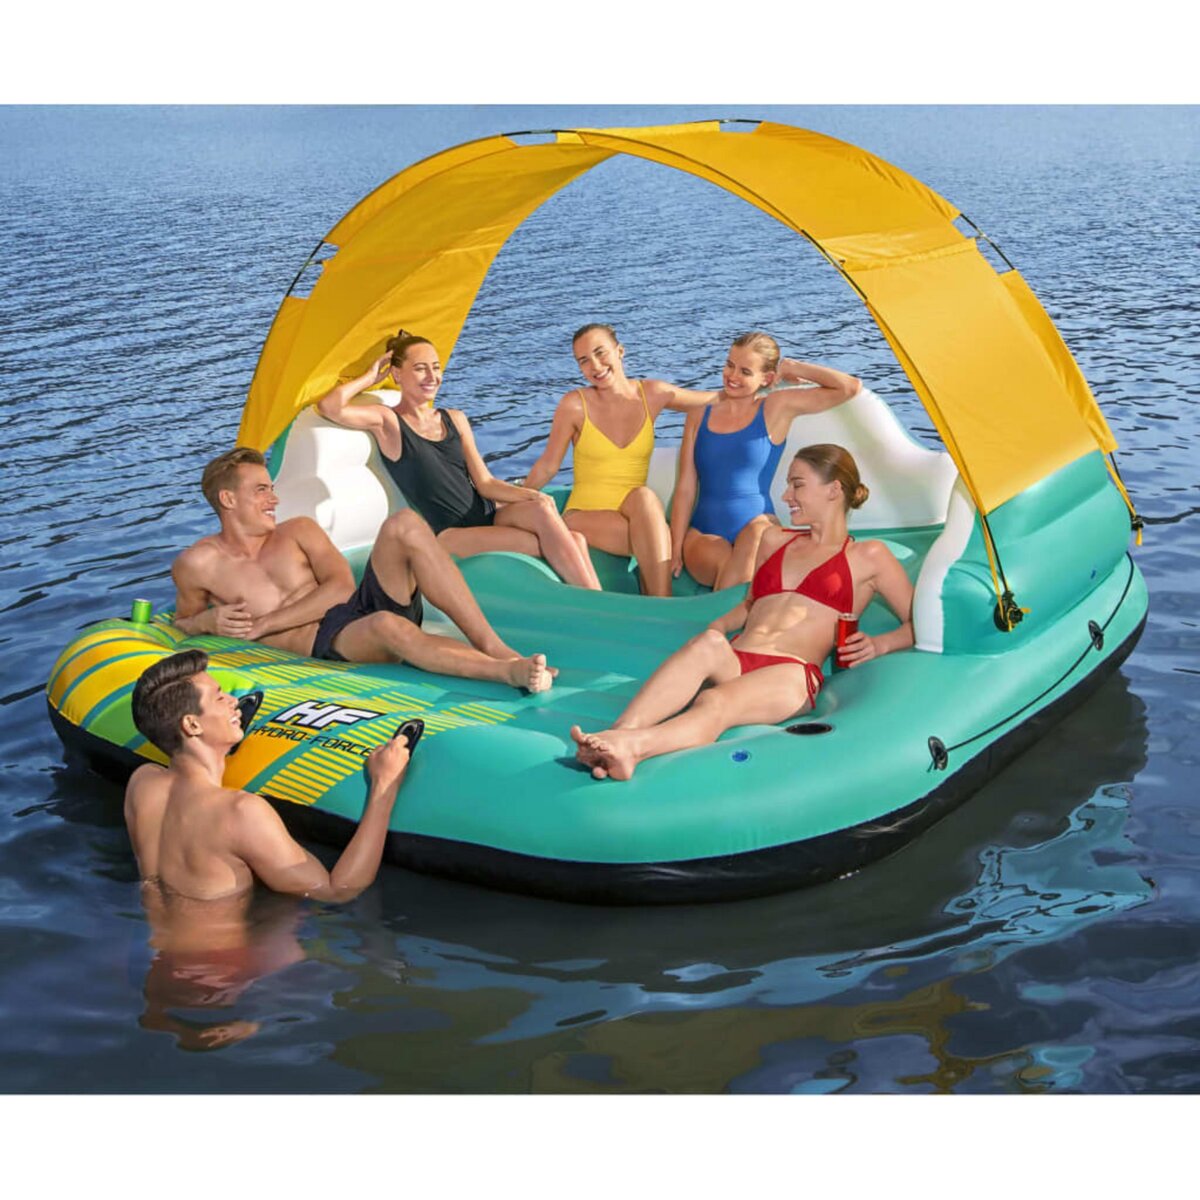 BESTWAY Bestway Île de piscine gonflable 5 personnes Sunny Lounge